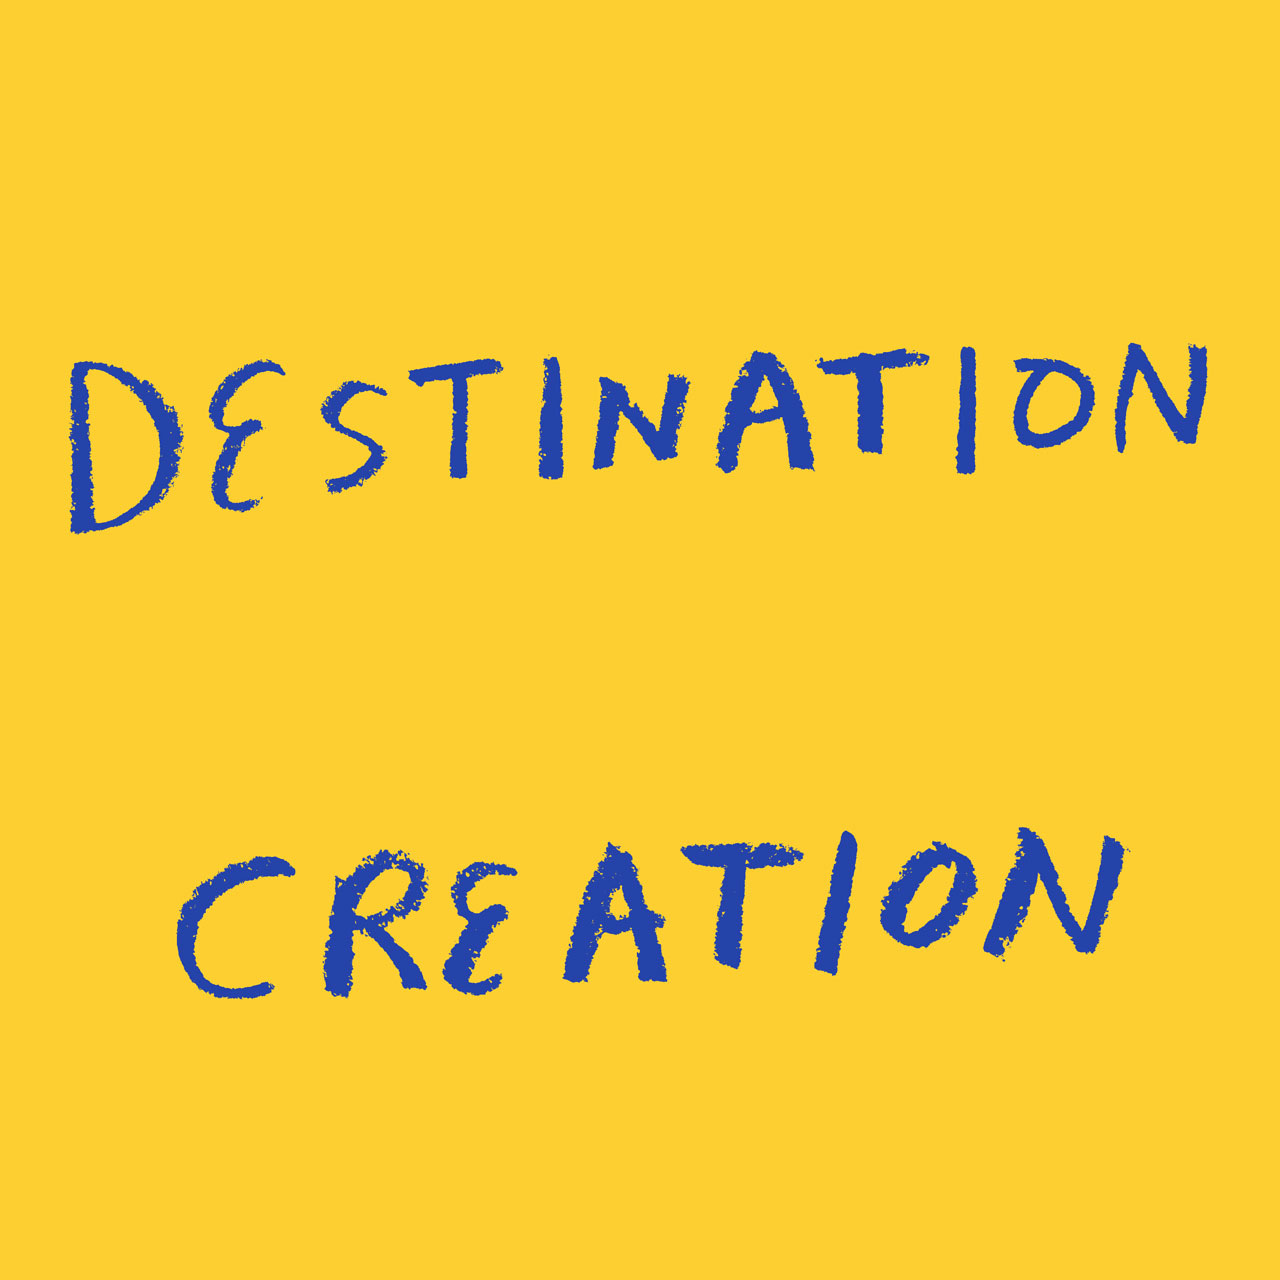 Destination Creation